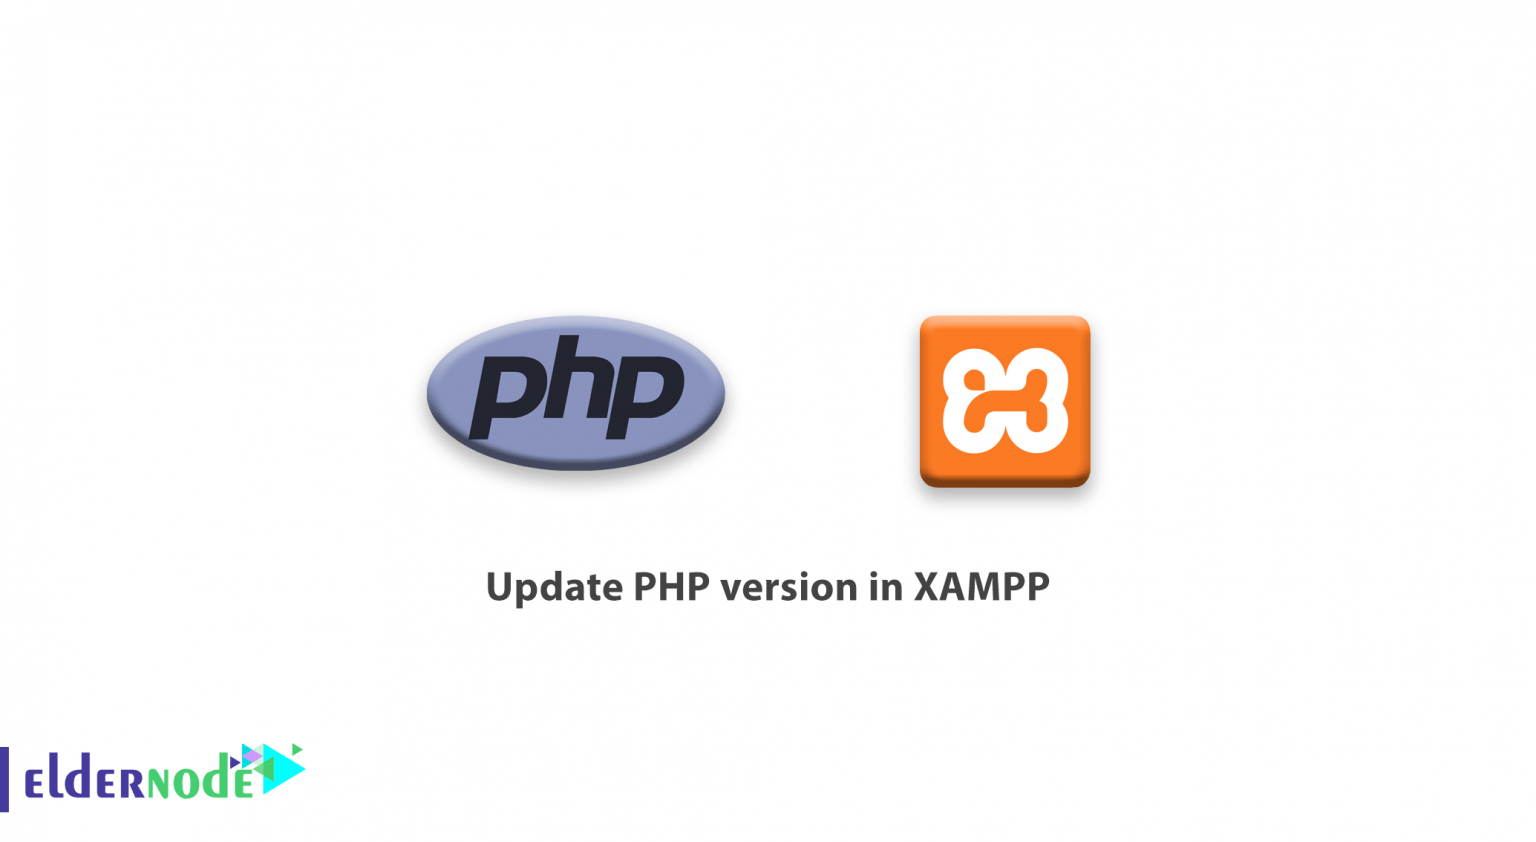 xampp php version